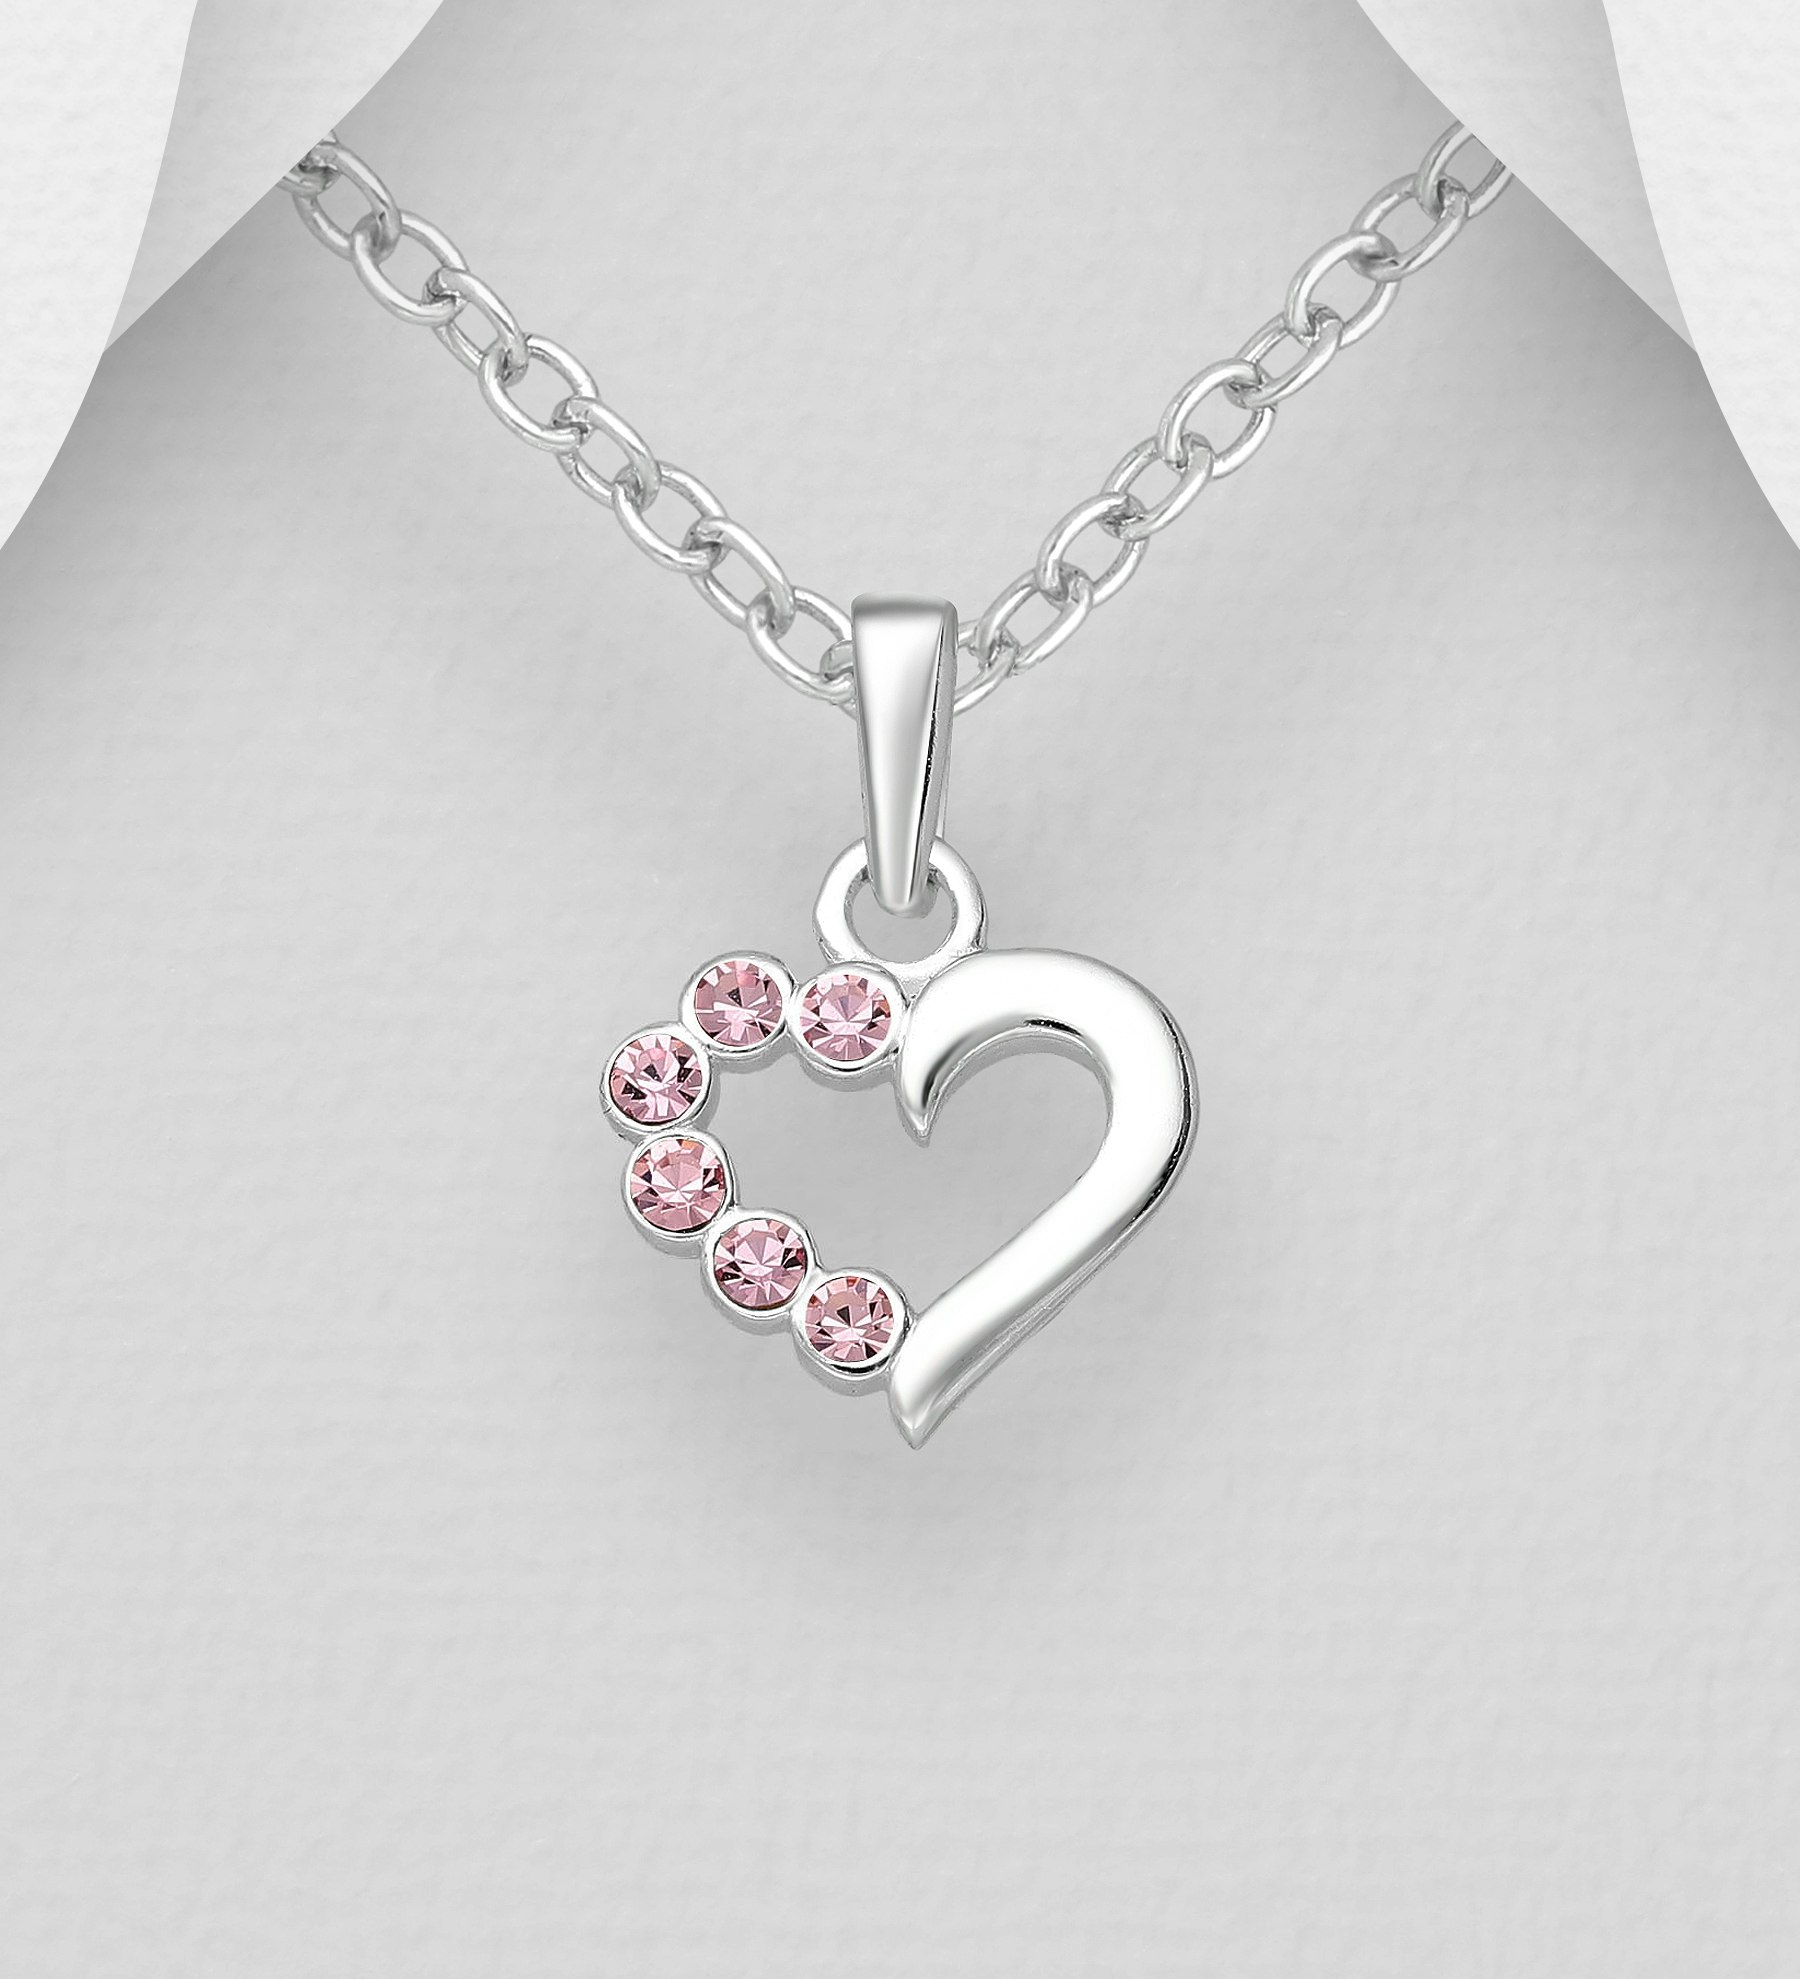 Barnhalsband Hjärta i silver med ljusrosa glittrande stenar - sött halsband till barn i äkta 925 sterling silver